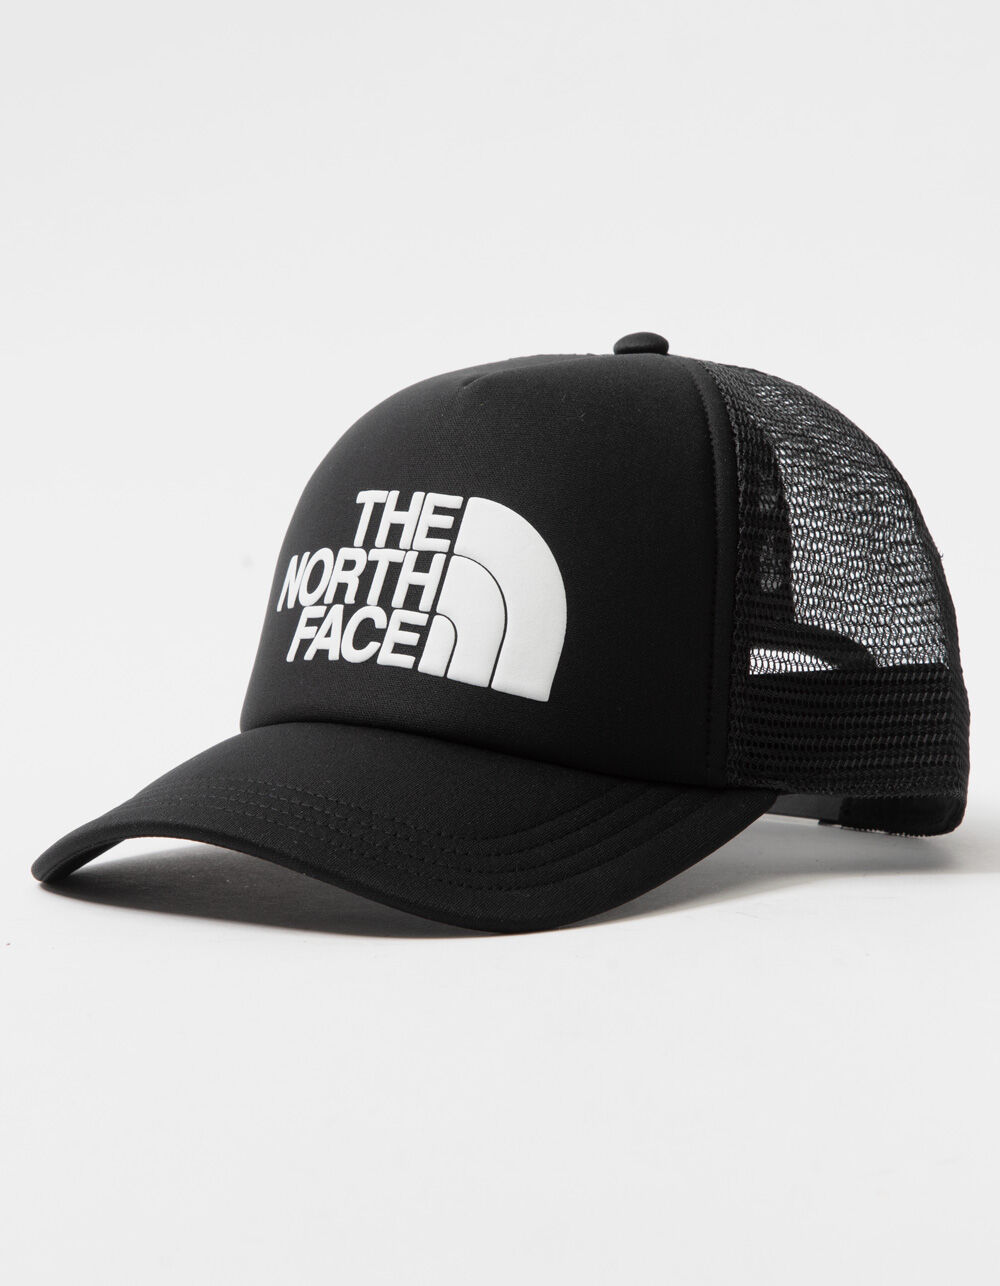 THE NORTH FACE Logo Mens Trucker Hat - BLACK/WHITE | Tillys